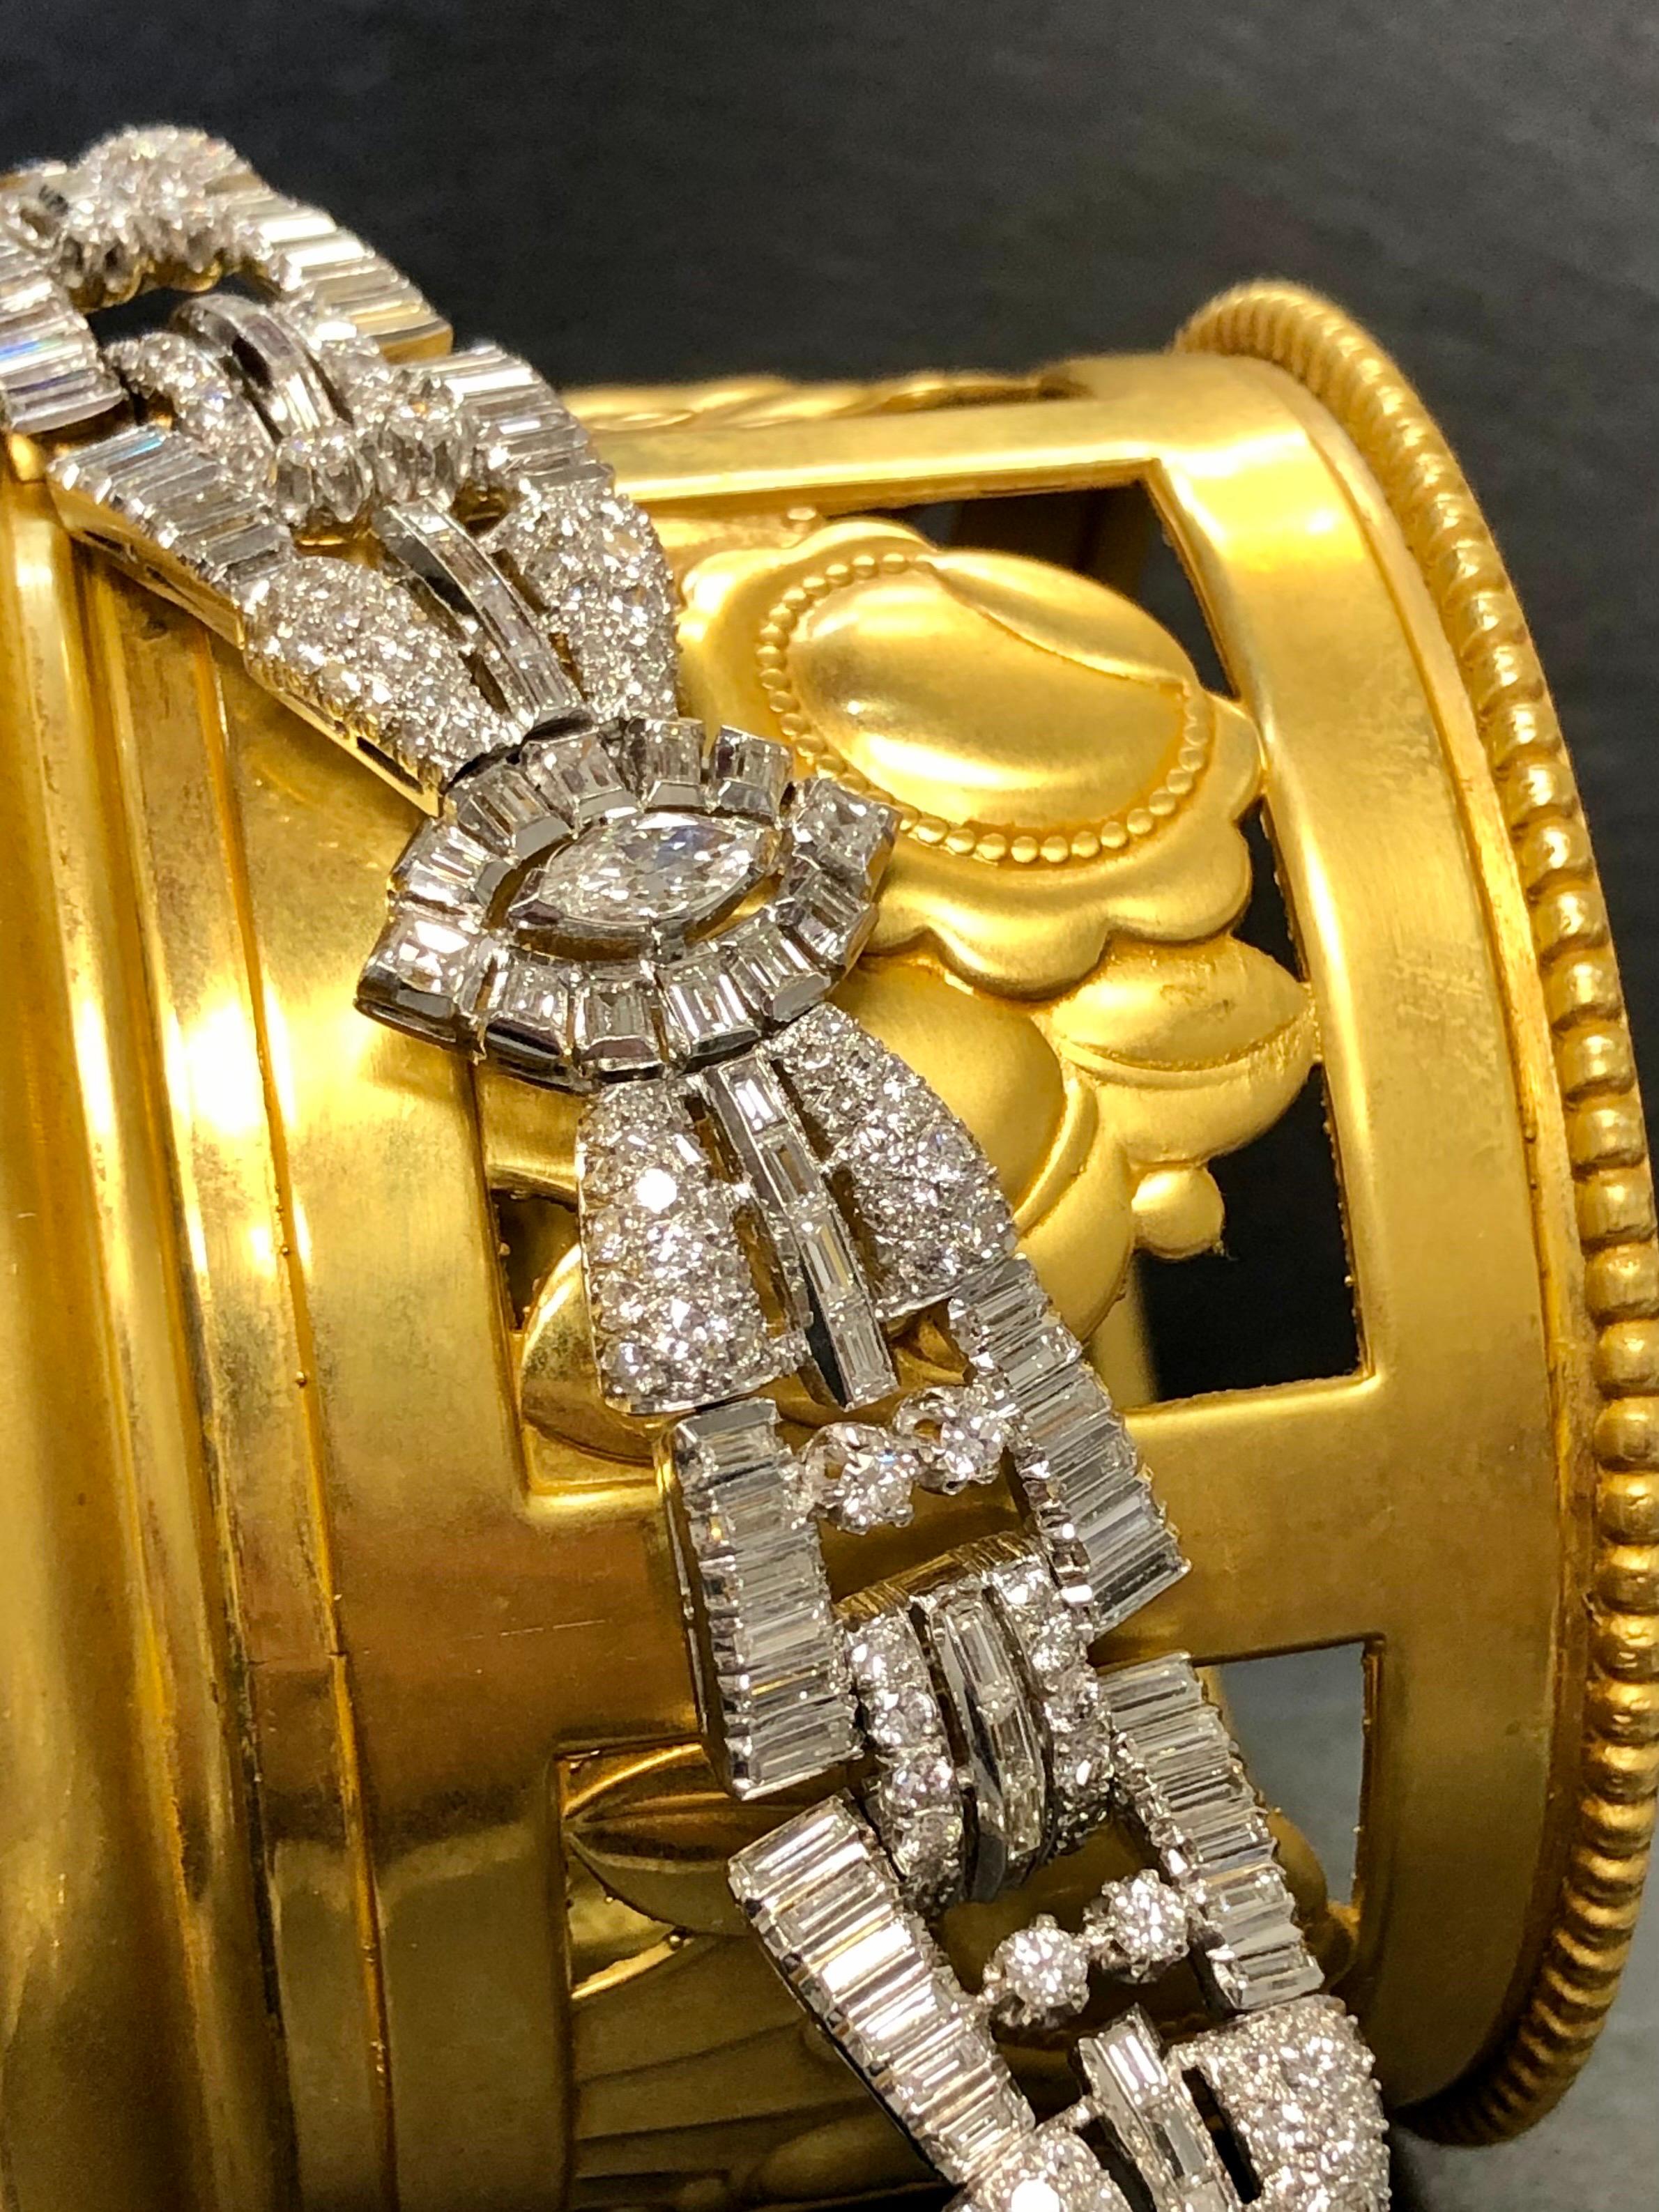 Eine atemberaubende 1950er Jahre Armband in Platin mit etwa 15,60cttw in größeren Marquise Diamanten sowie zahlreiche Baguette und runde Diamanten alle G-H Farbe und Vs1-2 Klarheit getan.

Abmessungen/Gewicht
Maße: 7